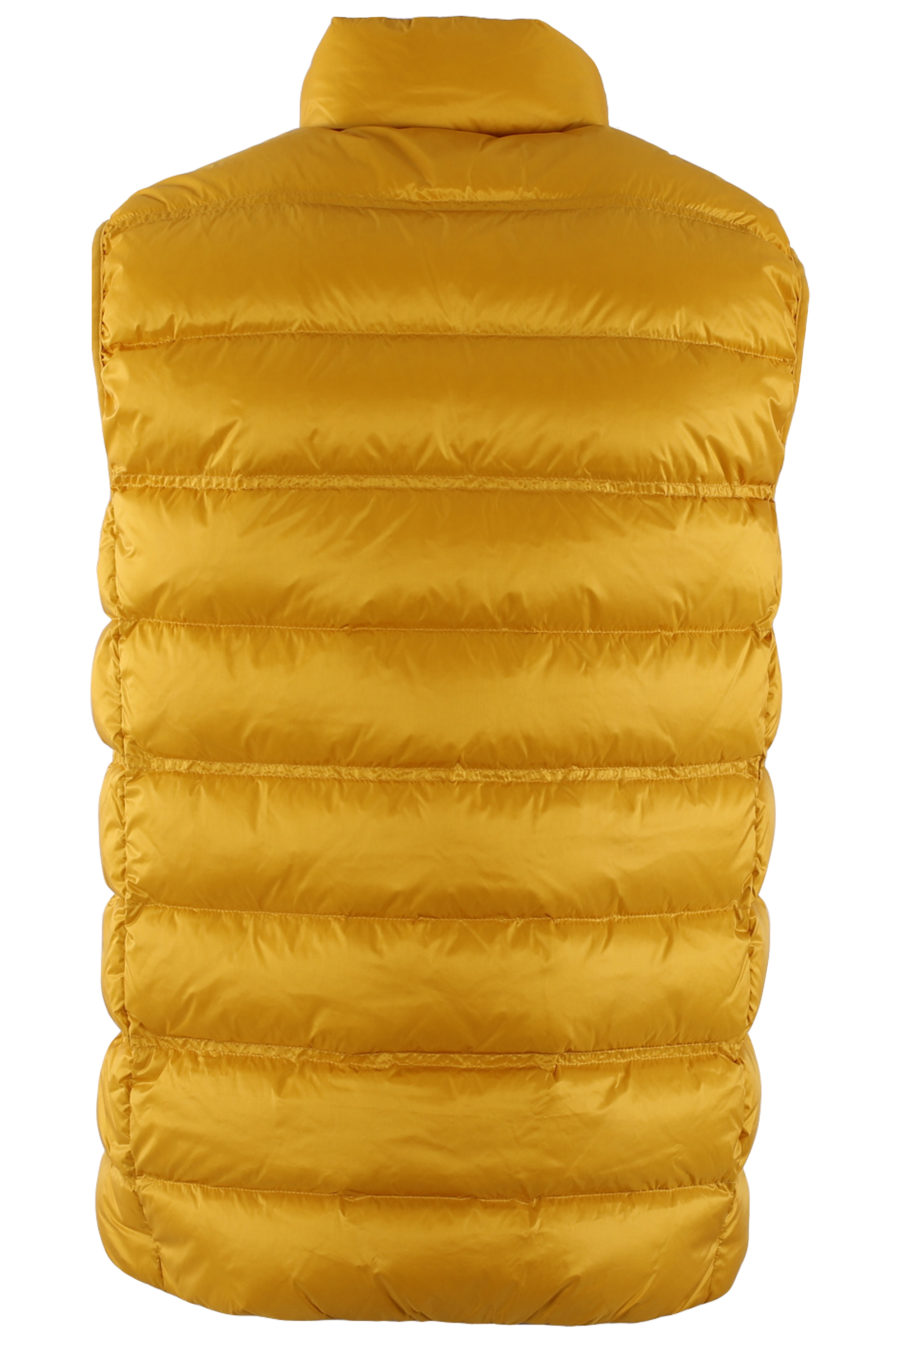 Chaleco acolchado de color amarillo - IMG 9414